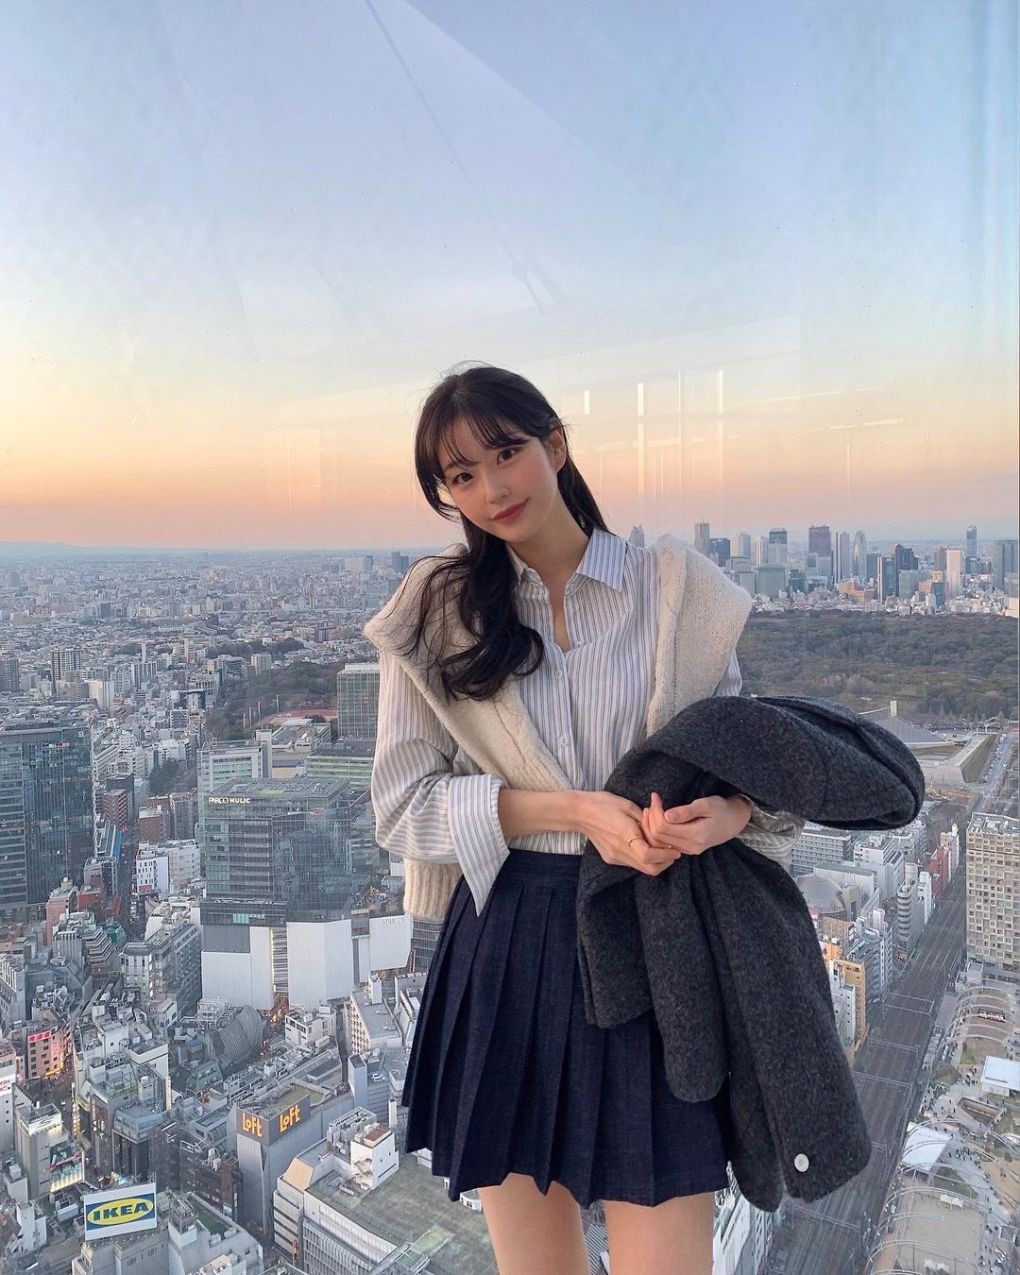 Từ vị trí này, bạn có thể quan sát được hầu hết địa điểm nổi tiếng ở Tokyo như Sân vận động quốc gia - nơi tổ chức lễ khai mạc Thế vận hội mùa hè 2020, tháp Cerulean, giao lộ Shibuya nổi tiếng, tháp Tokyo Sky Tree... Ảnh: Instagram goeun